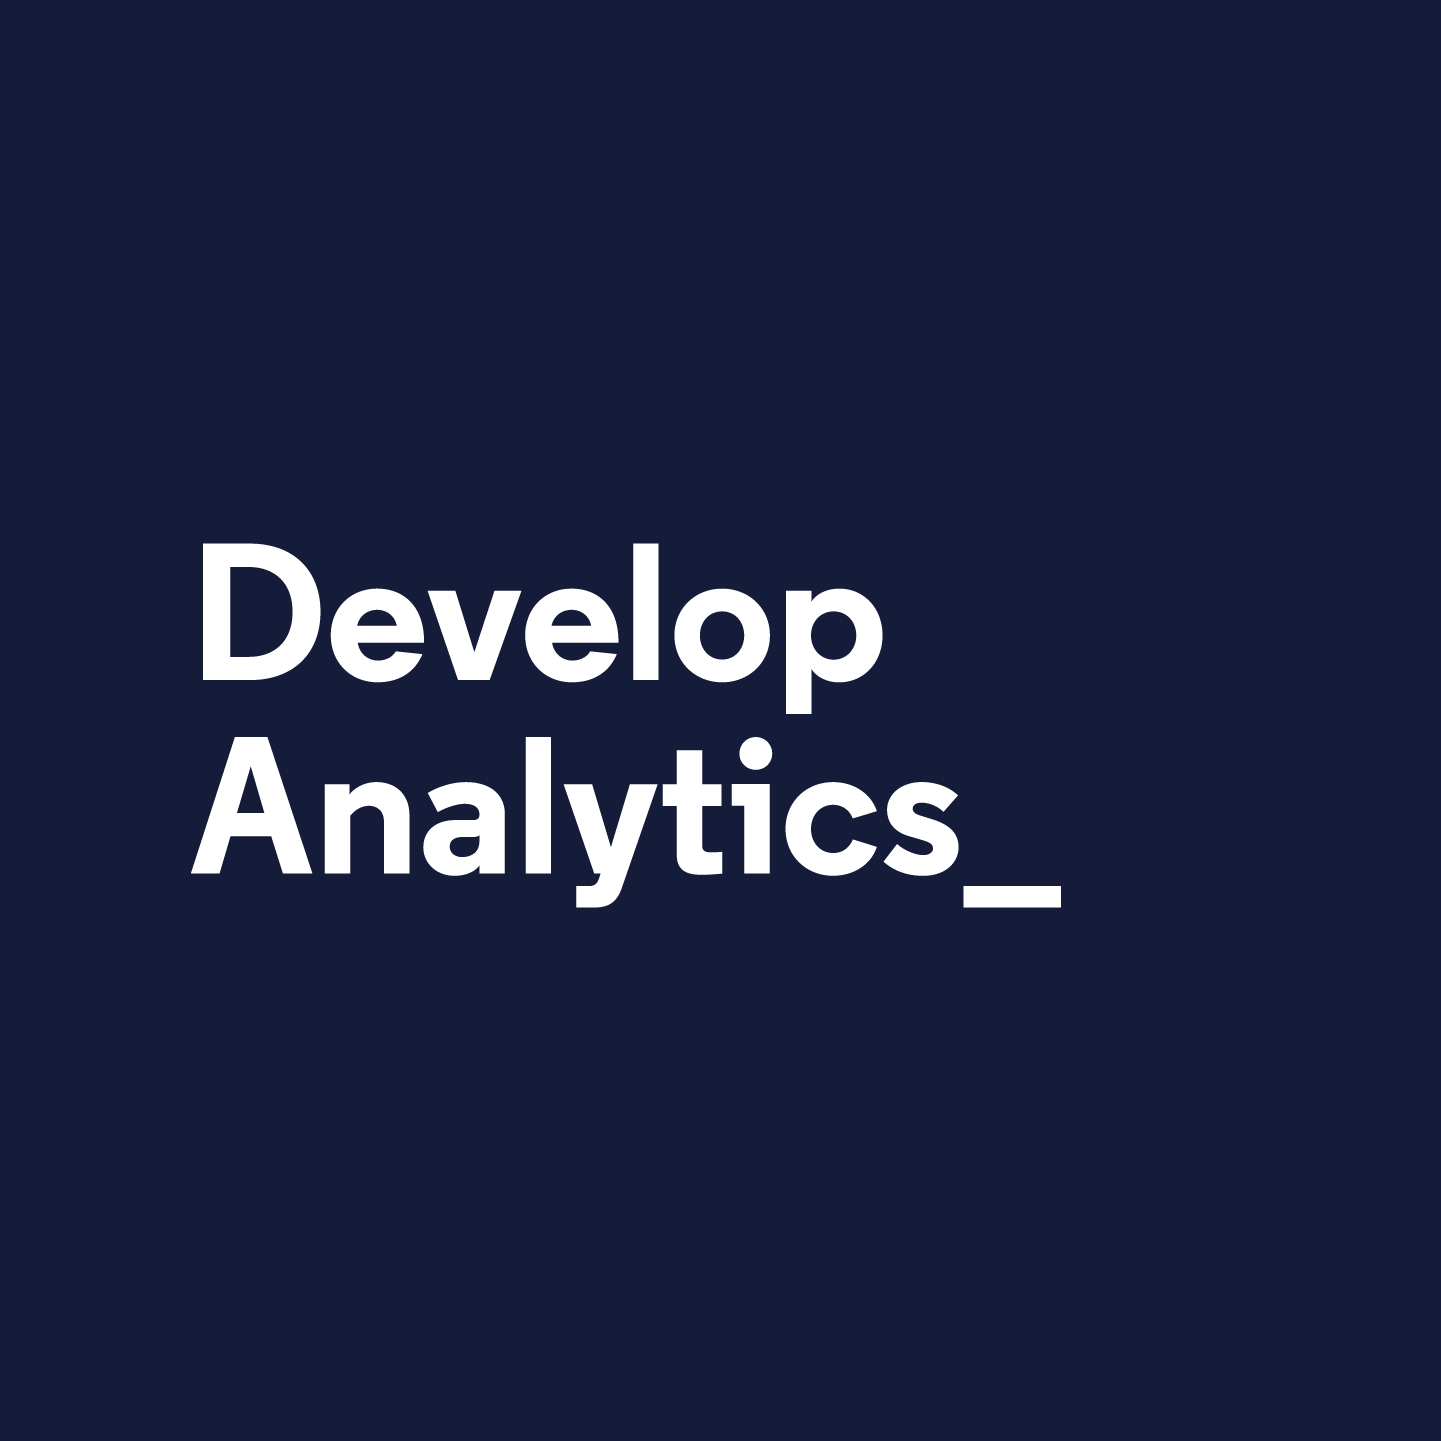 gander-codecademy-develop-analytics@2x